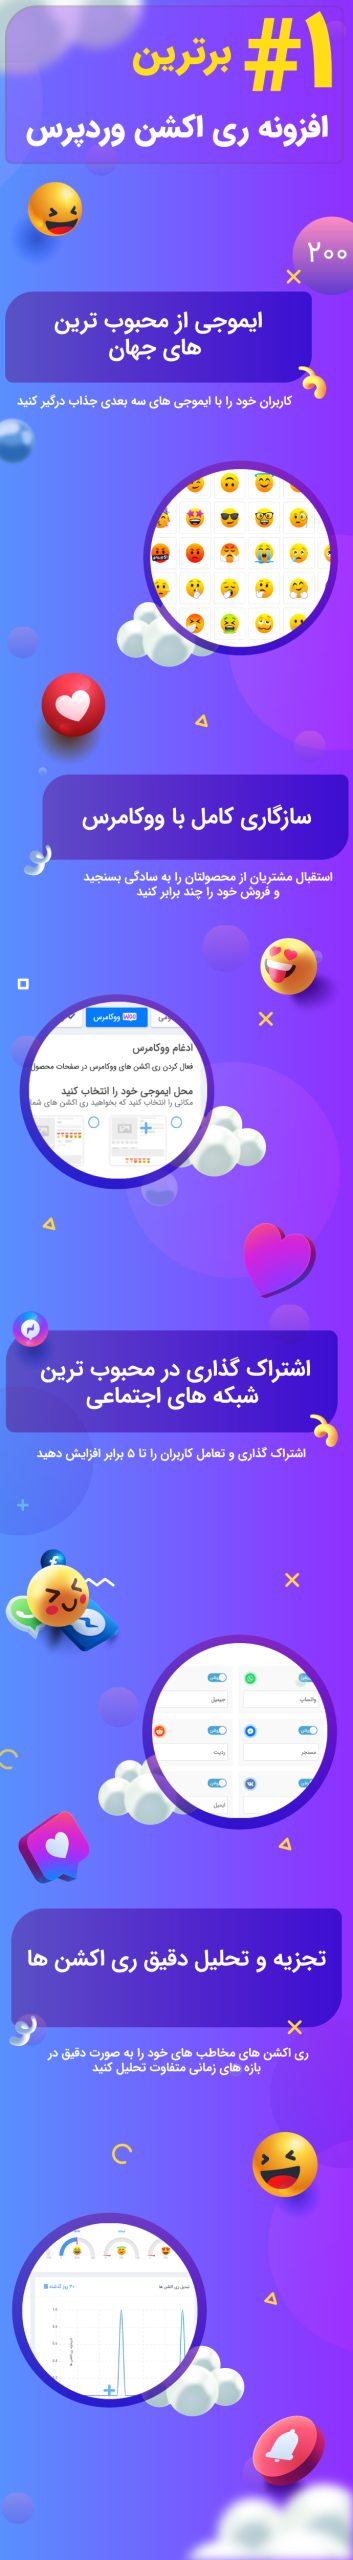 دانلود افزونه Wp Emoji Reactions Pro فارسی